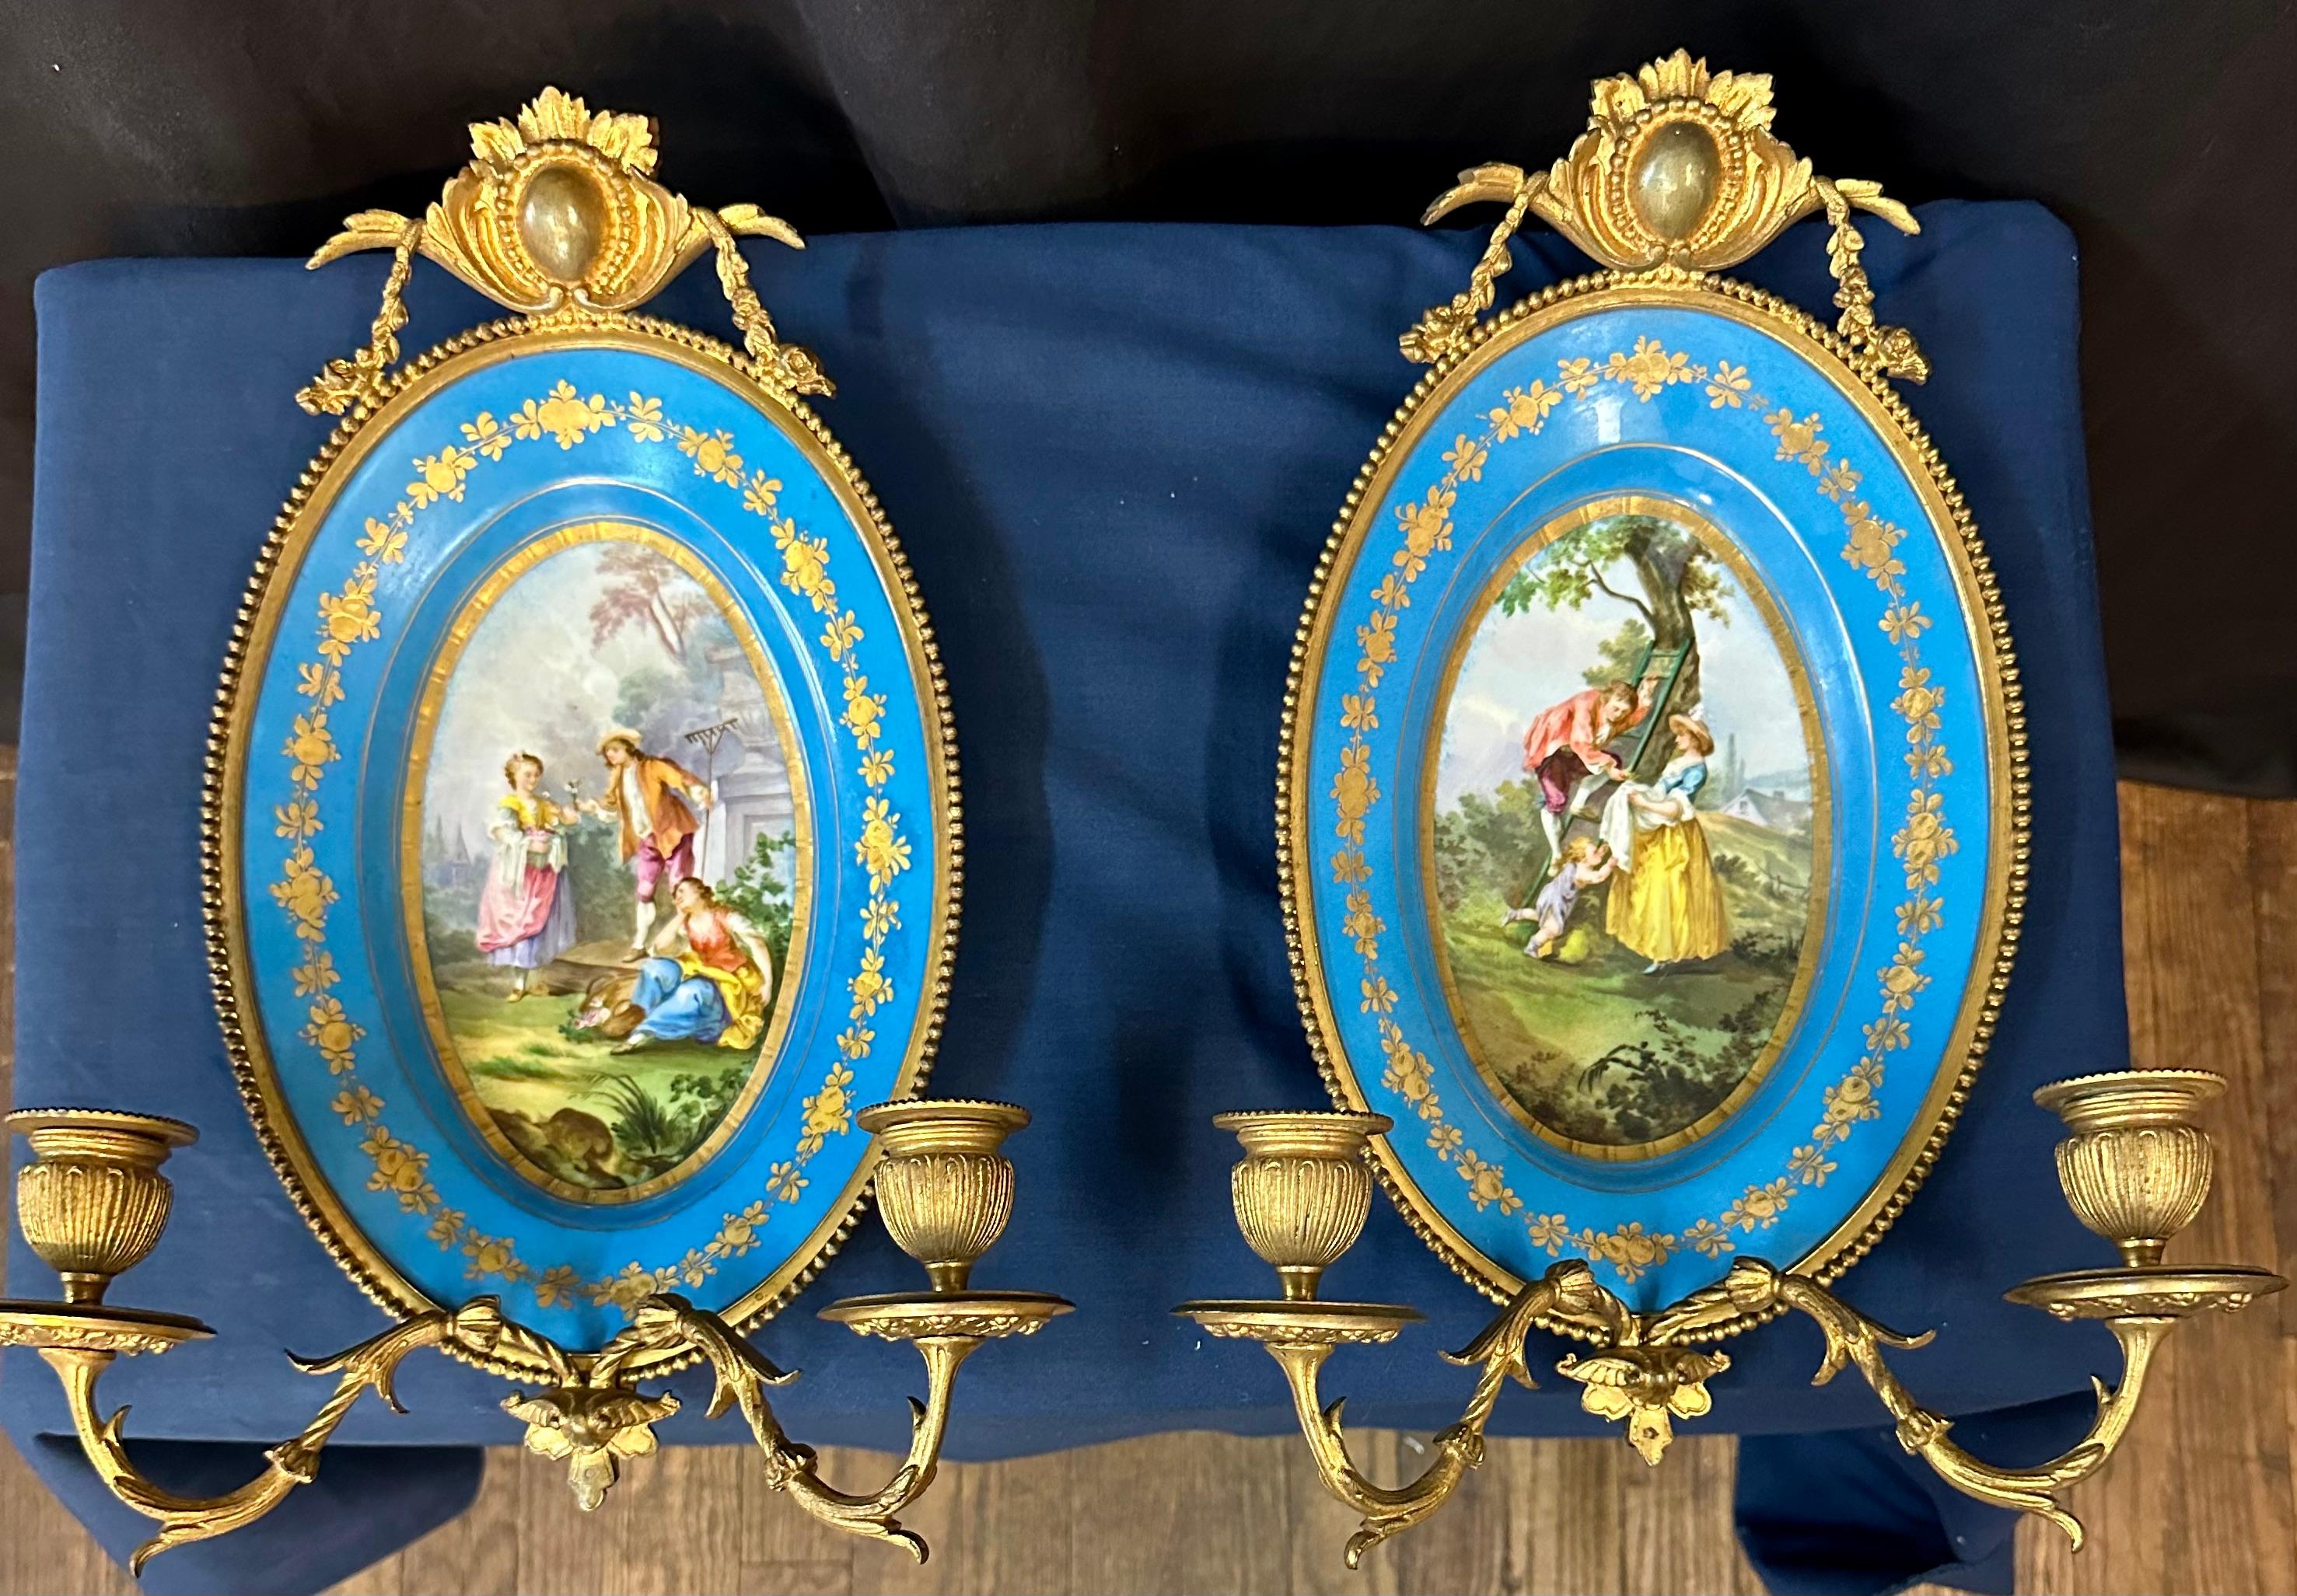 Dieses atemberaubende Paar Wandleuchter aus Sèvres-Porzellan stammt aus dem frühen 19. Jahrhundert und zeigt feine handgemalte Porzellanszenen  mit scharfen, lebendigen Details. Diese lebhaften, ovalen Gemälde werden durch tief himmelblaue Ränder